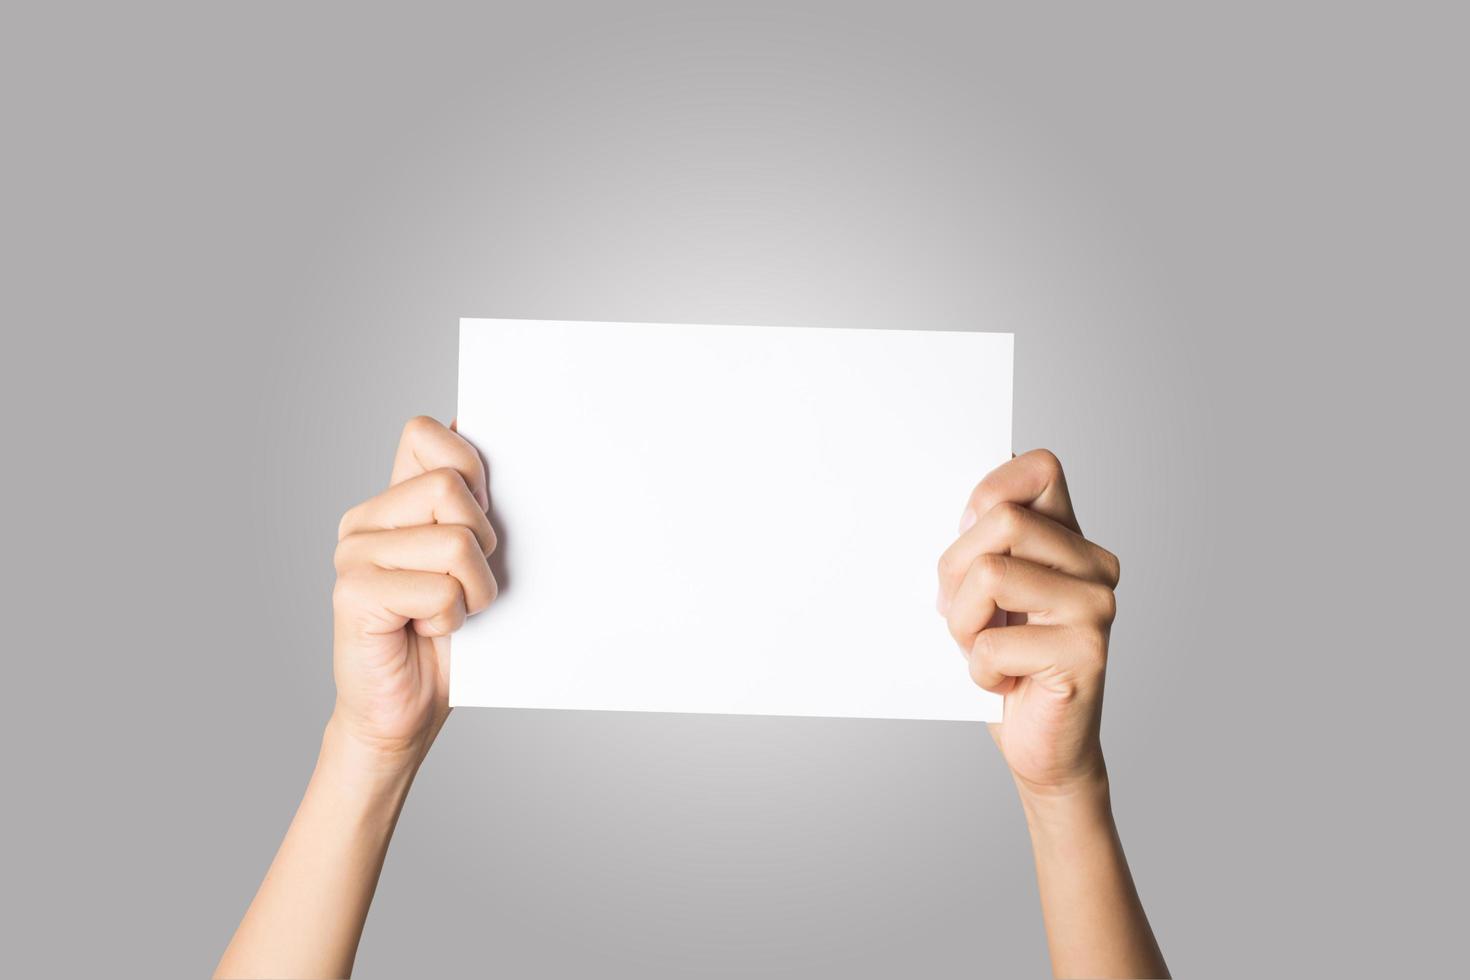 close-up van een vrouw hand met blanco papier geïsoleerd op een witte achtergrond foto